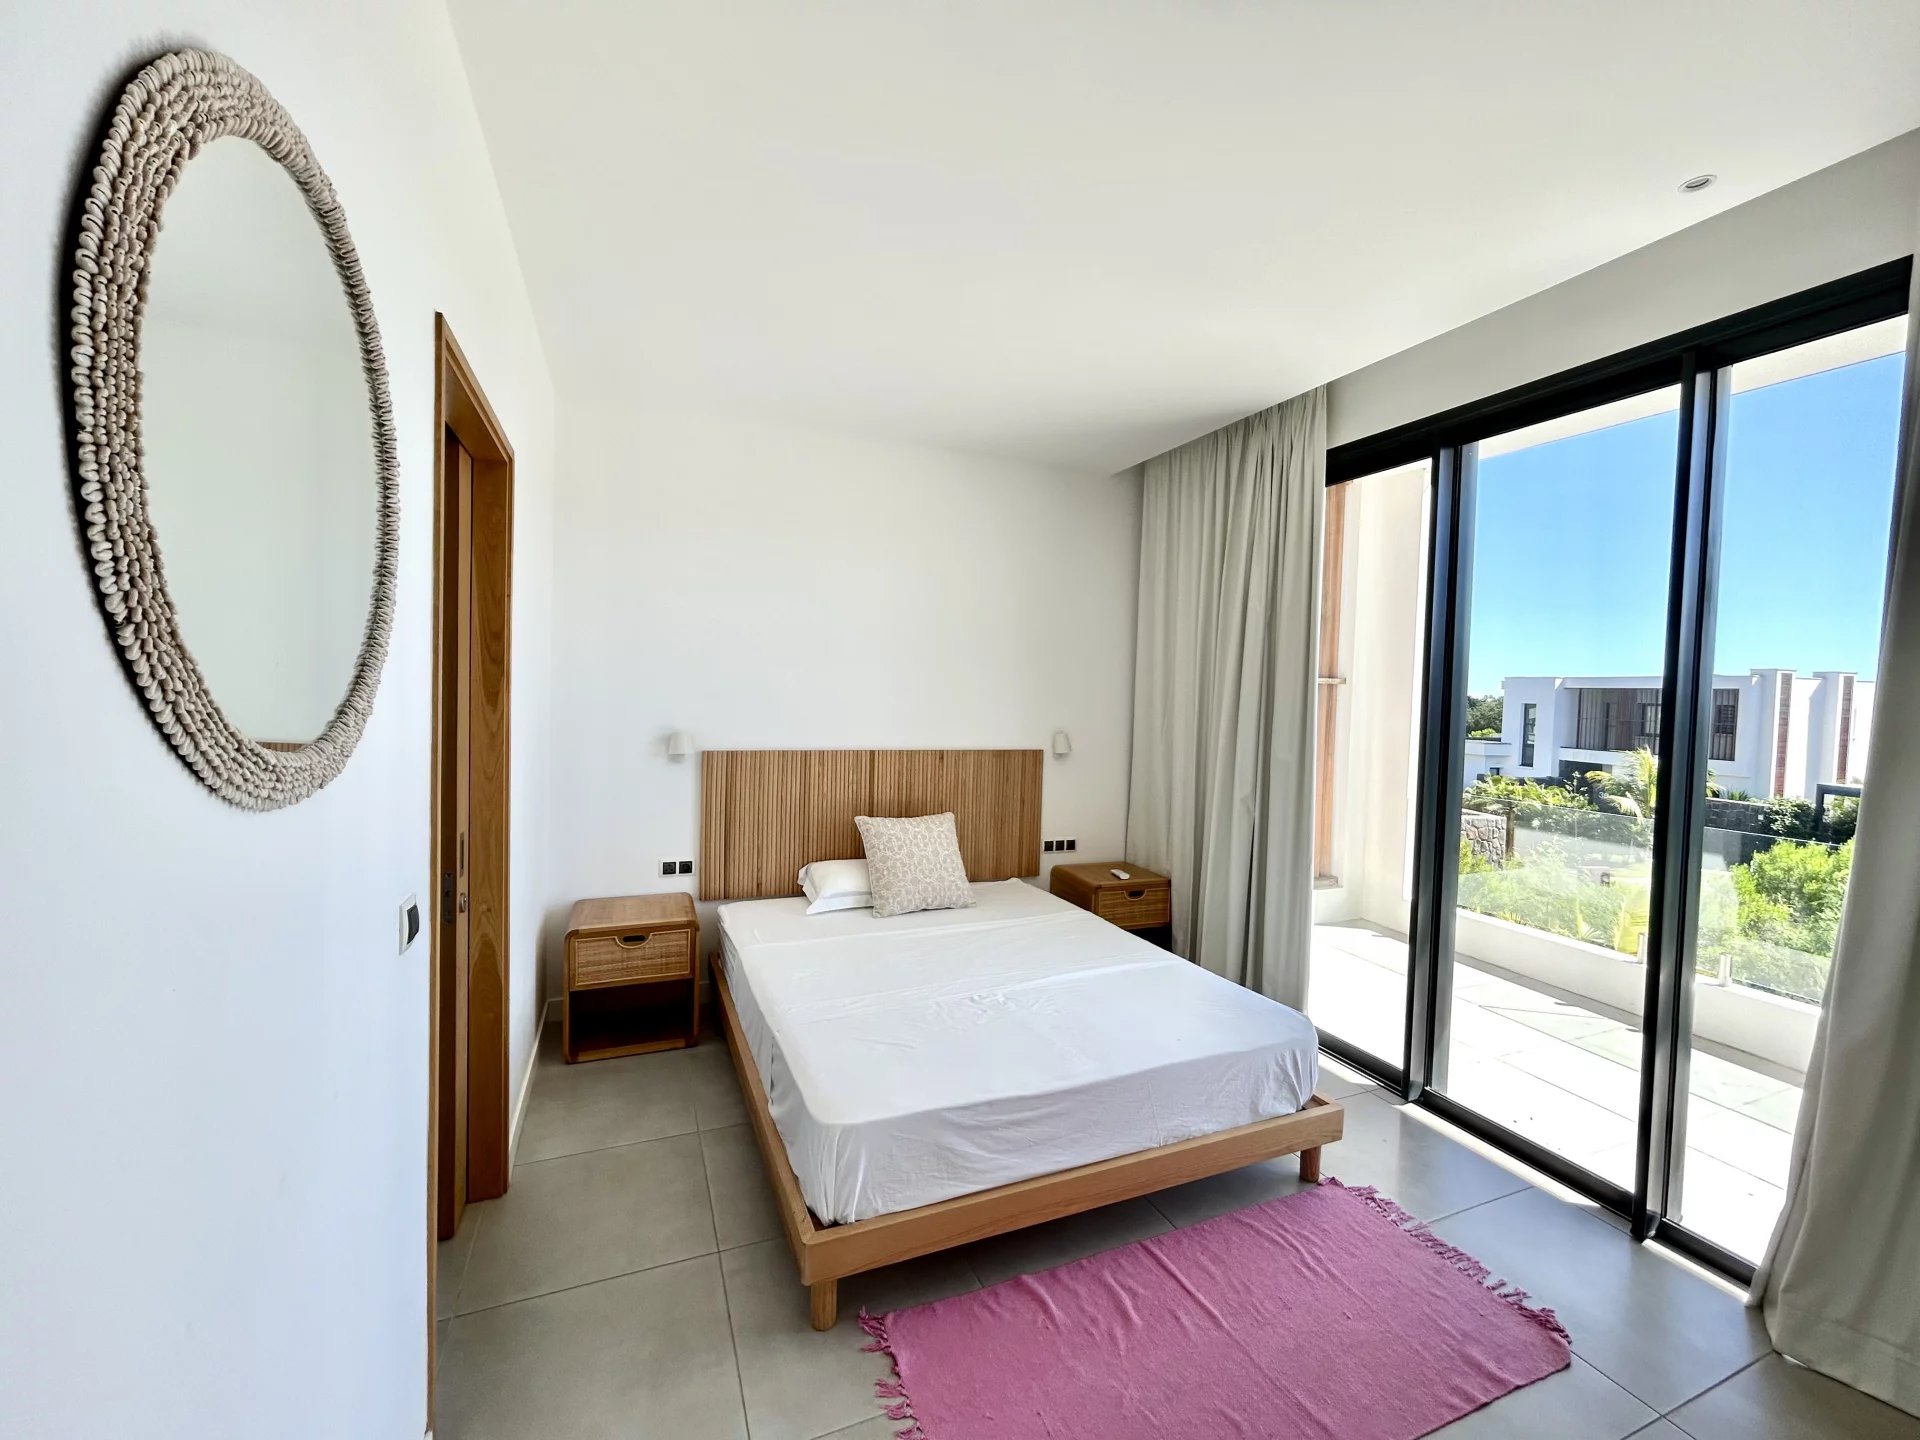 TAMARIN - Villa flambant neuve dans un domaine résidentiel haut de gamme - 4 chambres - picture 4 title=